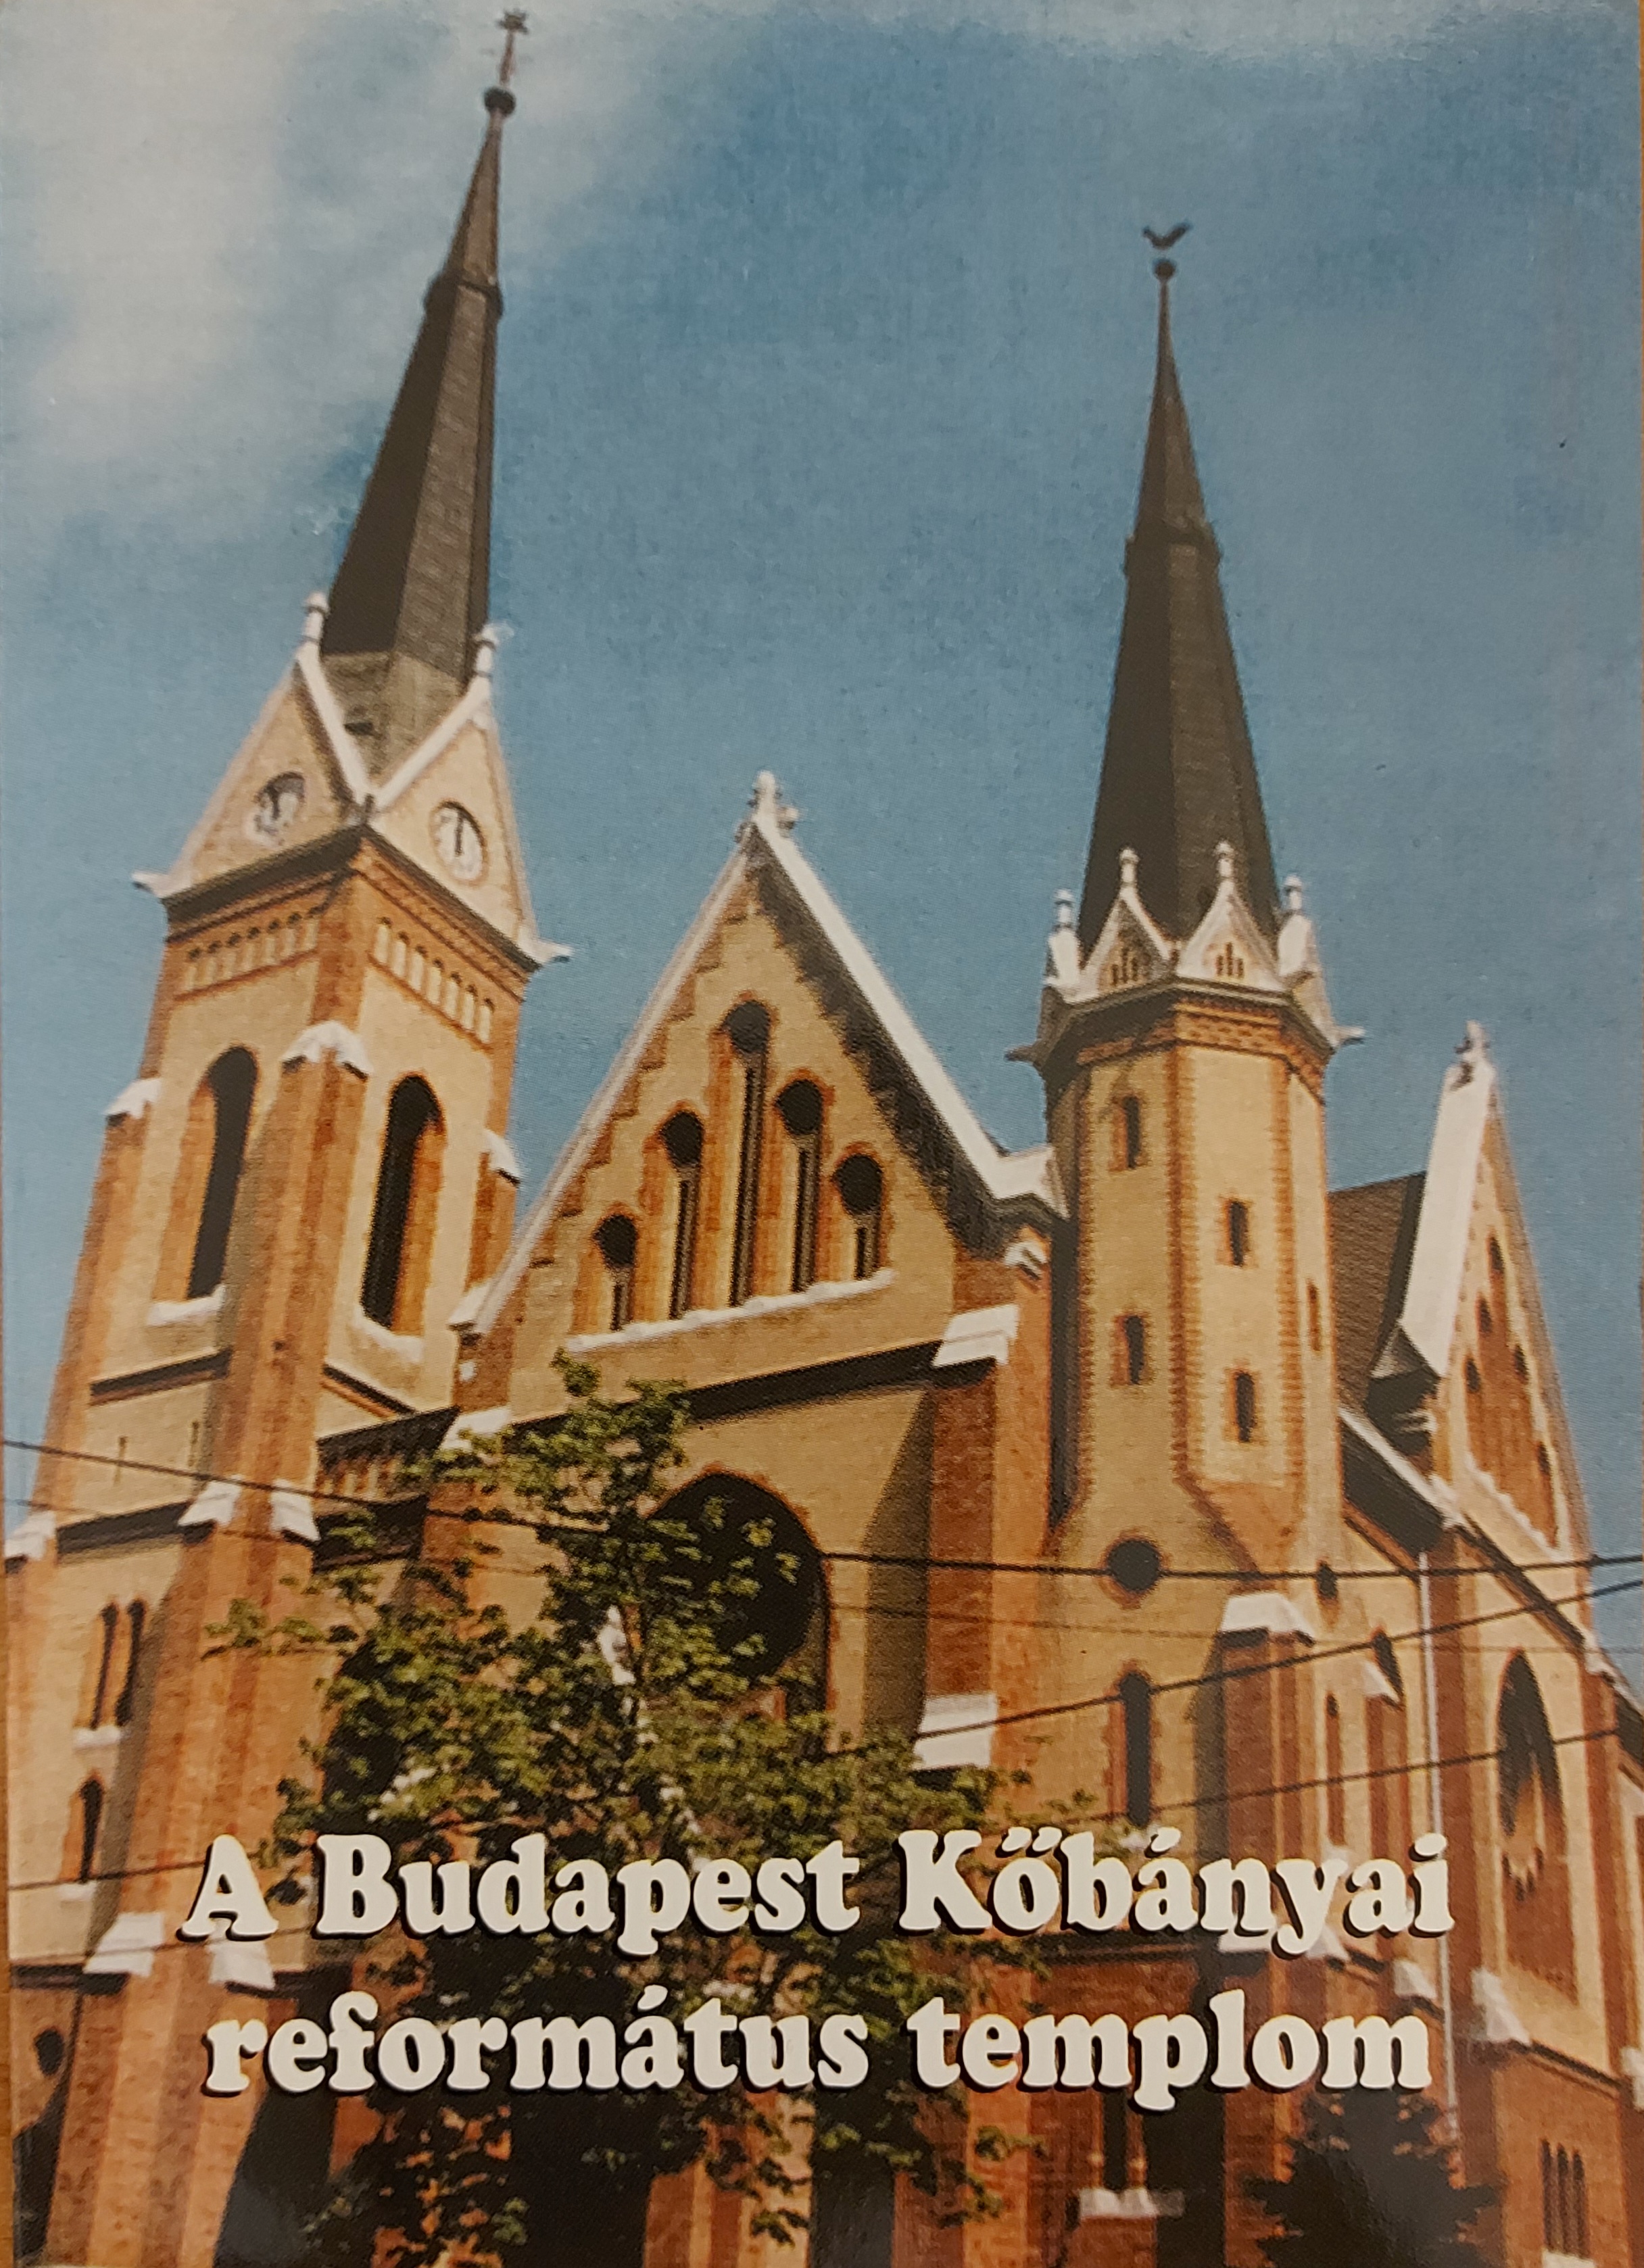 A Budapest Kőbányai református templom